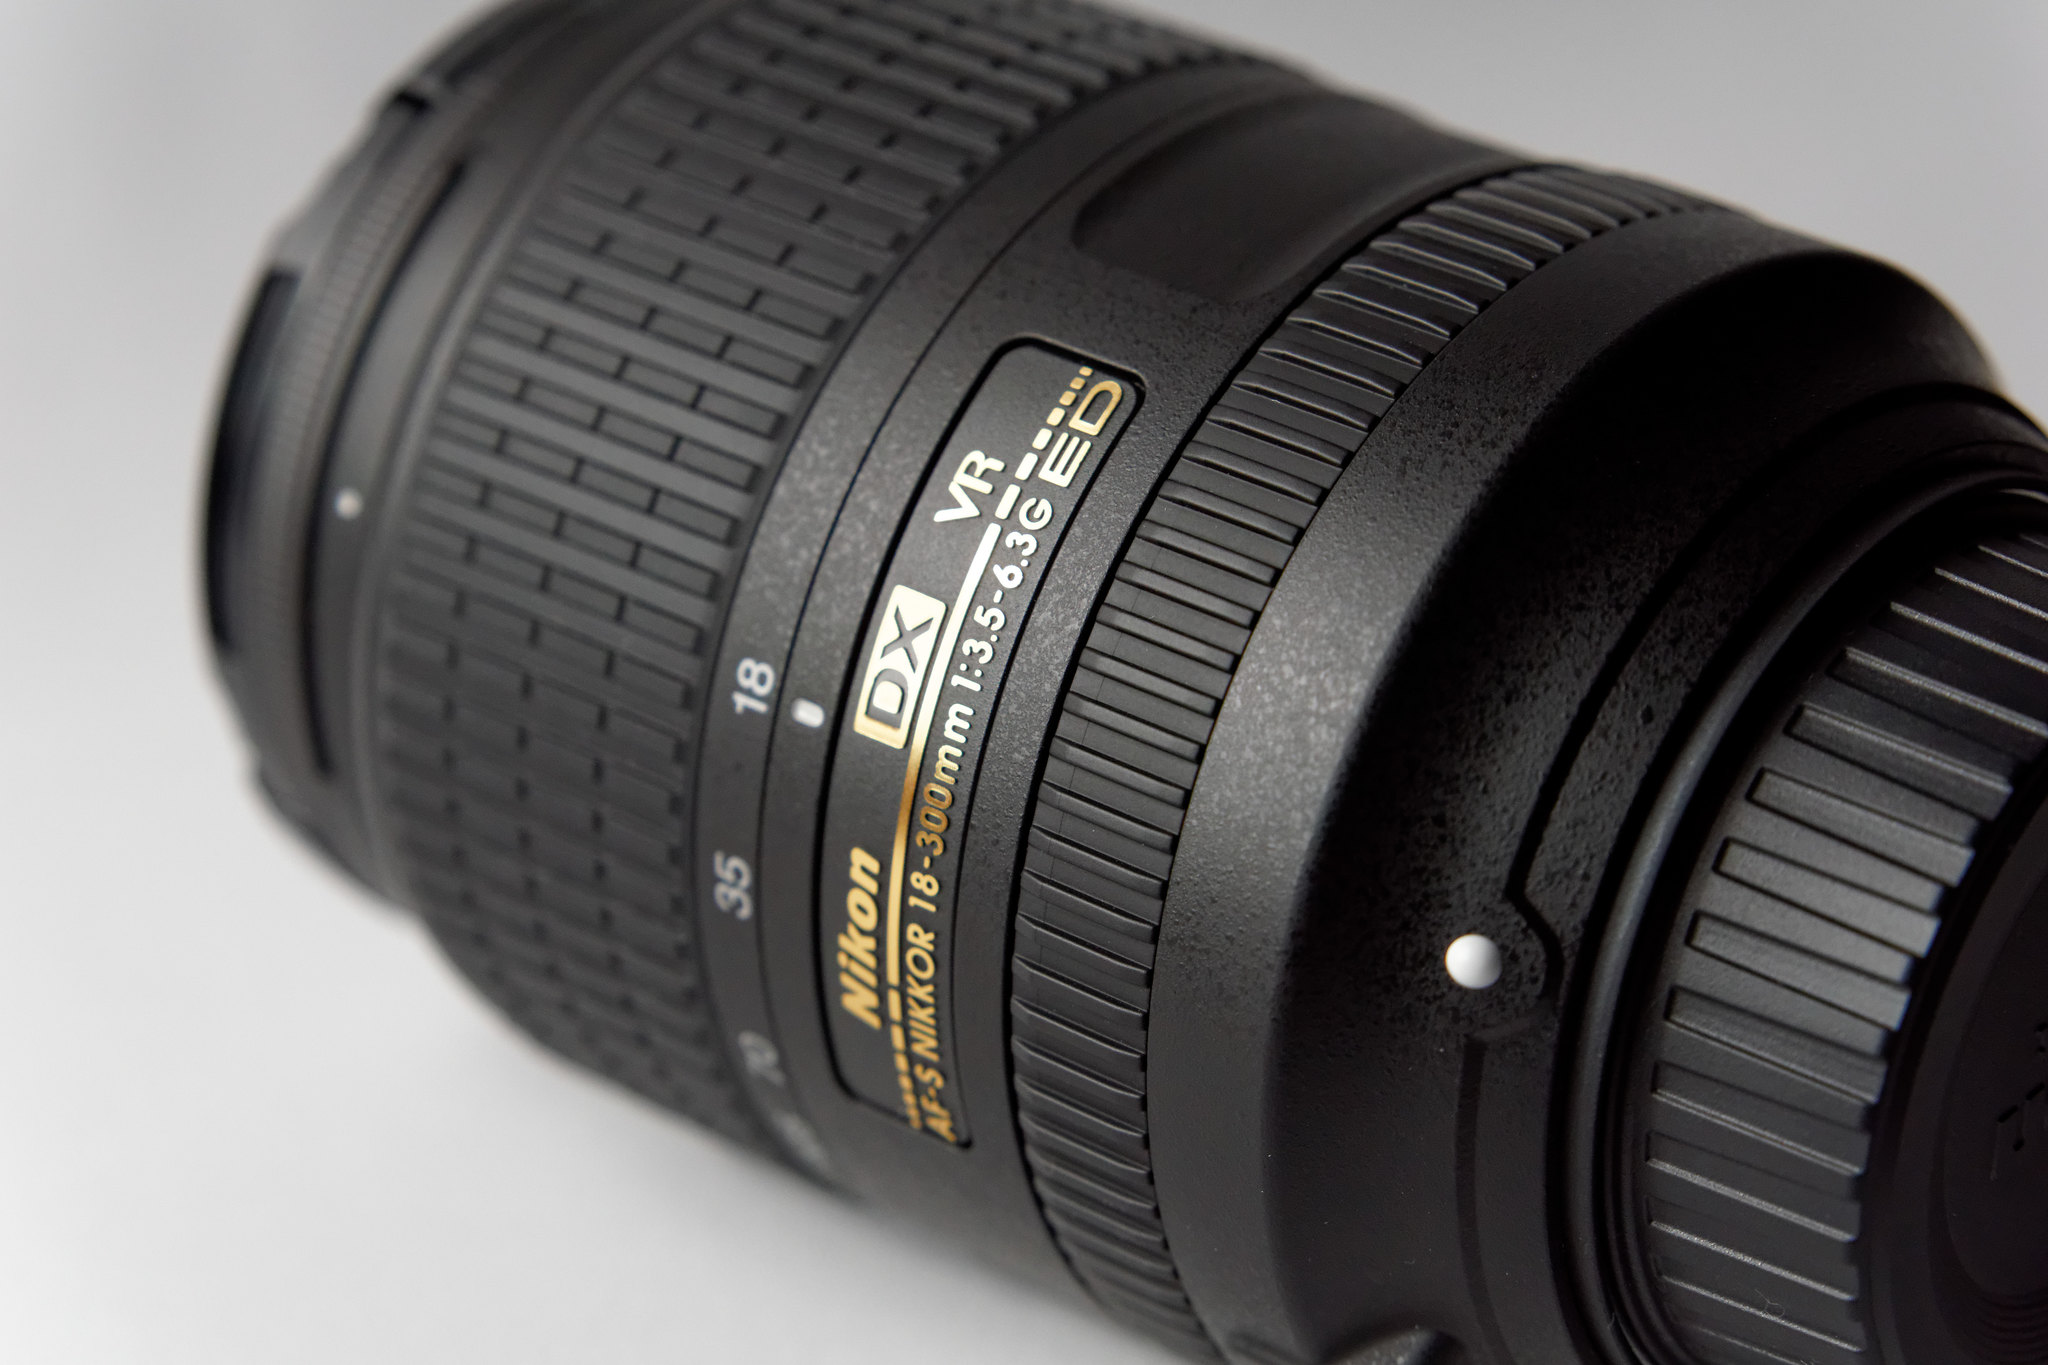 Nikon 高倍率ズームレンズ AF-S DX NIKKOR 18-300mm f 3.5-6.3G ED VR